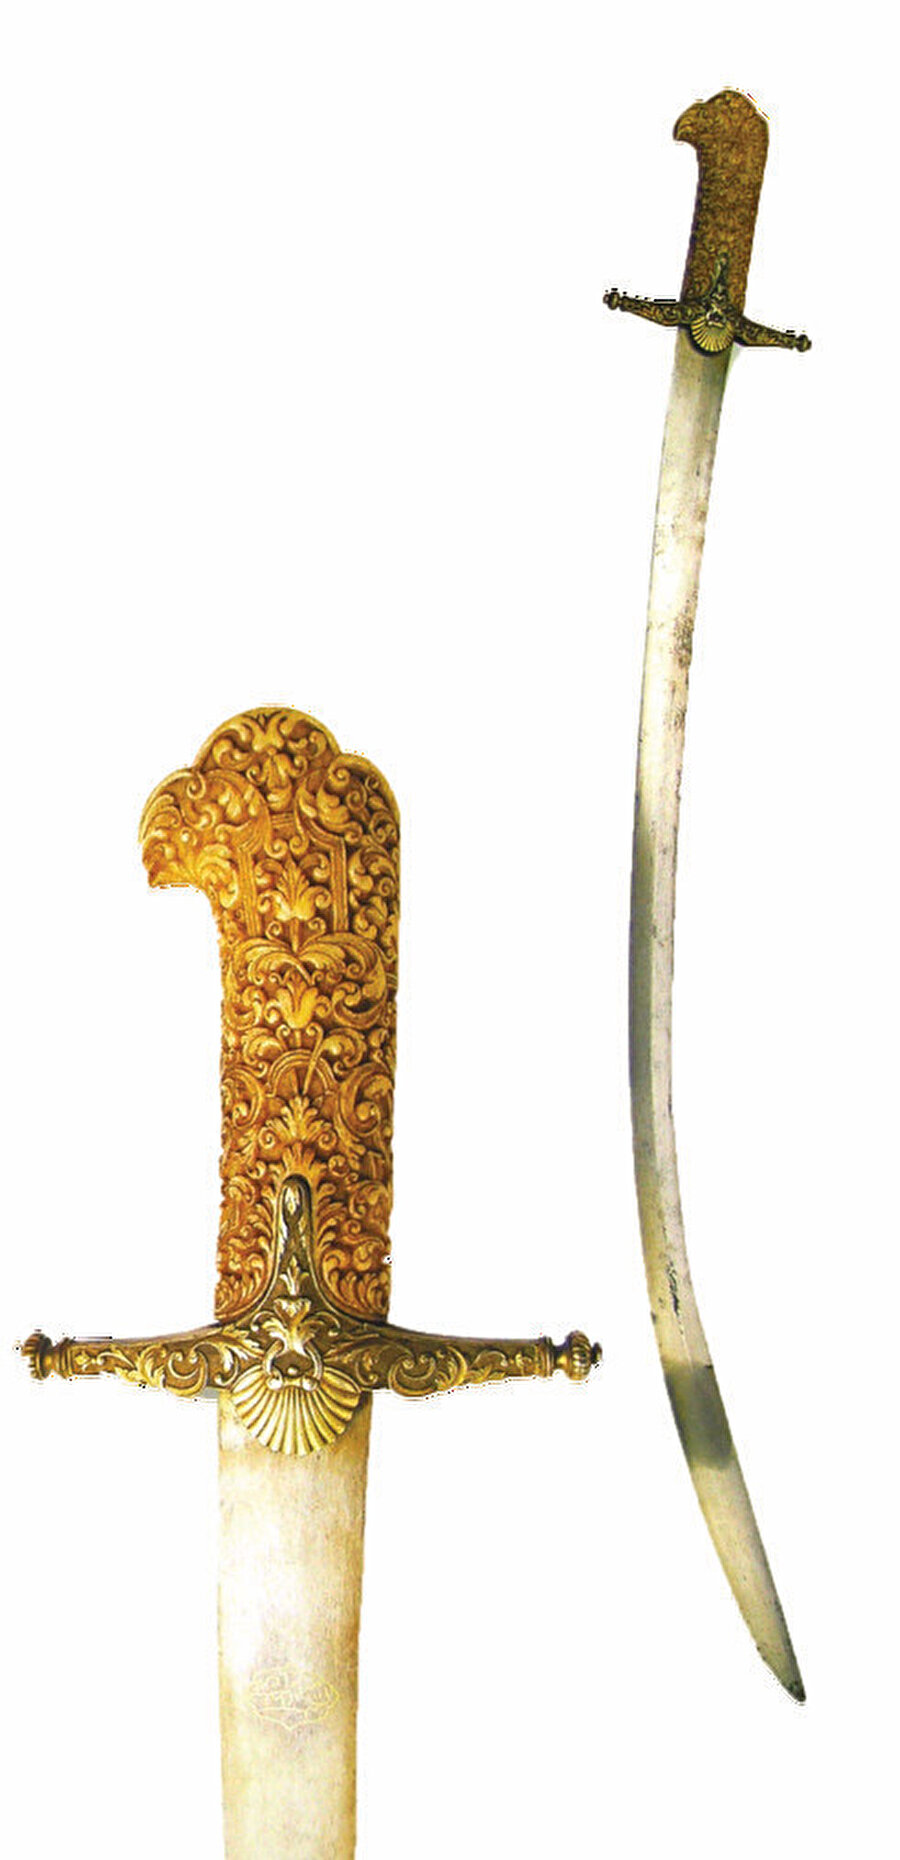 » Eğri kılıç: Şah’a karşı Kısa bir süre saltanat sürmesine rağmen tarihin en büyük cihangirleri arasına giren Yavuz’a ait bir kılıç. Kabzası fildişi olan kılıcın üzerinde Sultan Selim ibn Bayezid yazılı. 